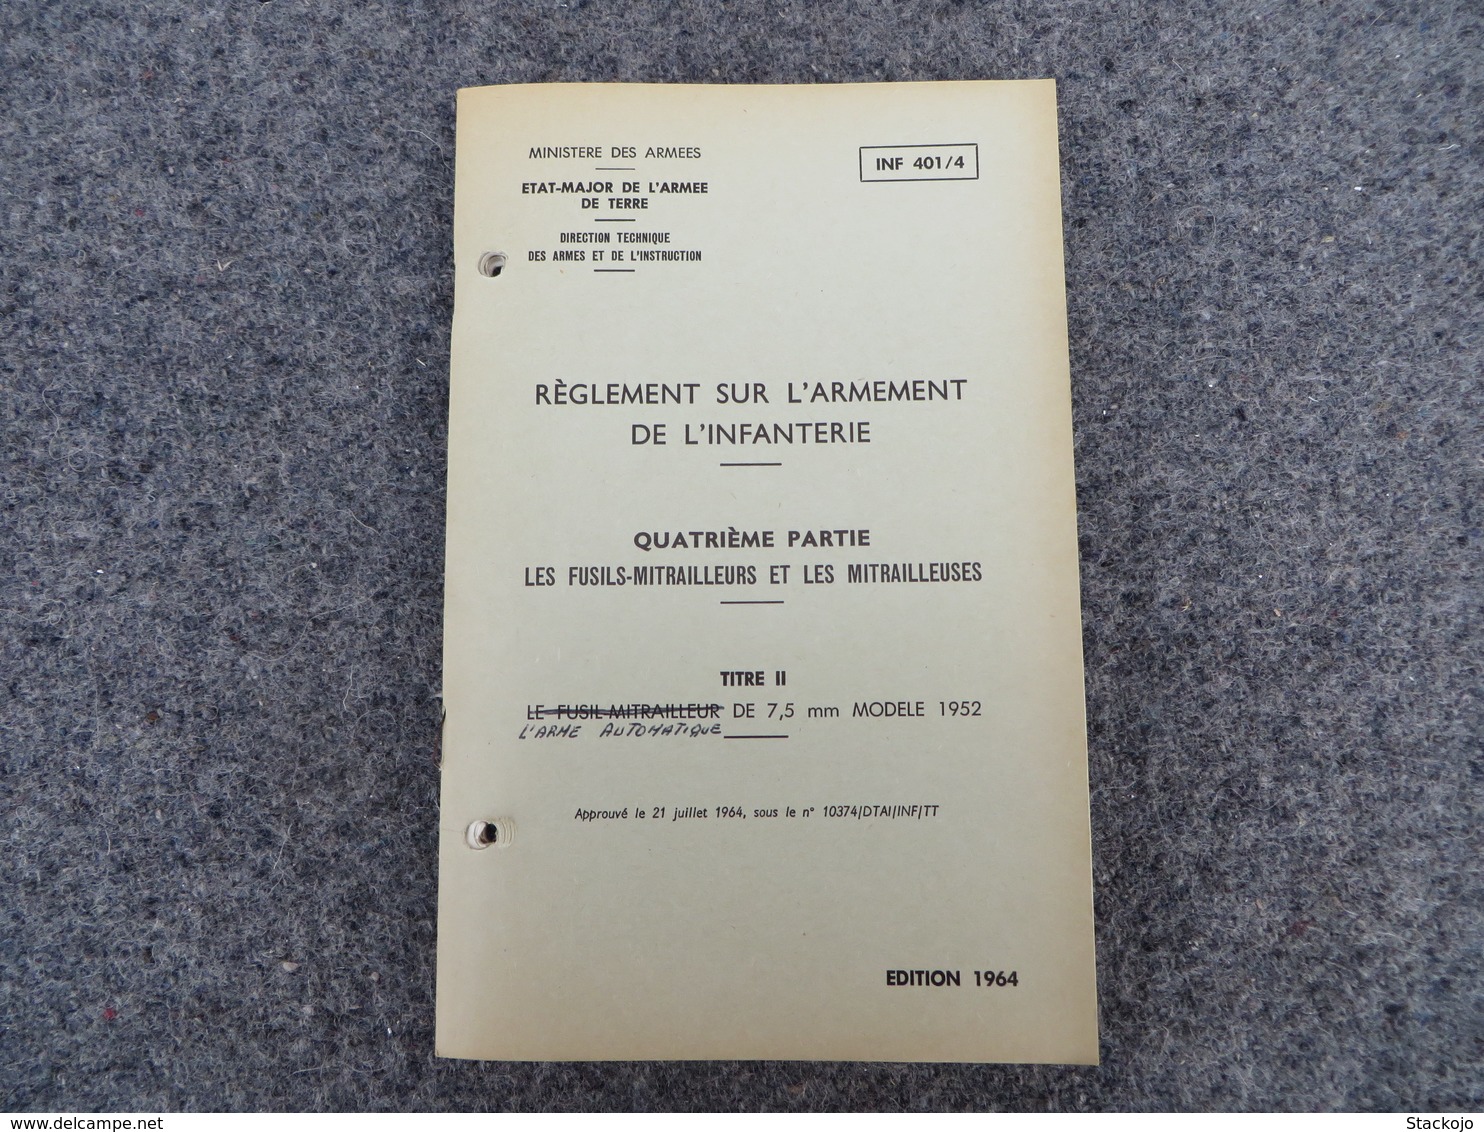 INF. 401/4 - Règlement sur l'armement de l'infanterie - 312/09